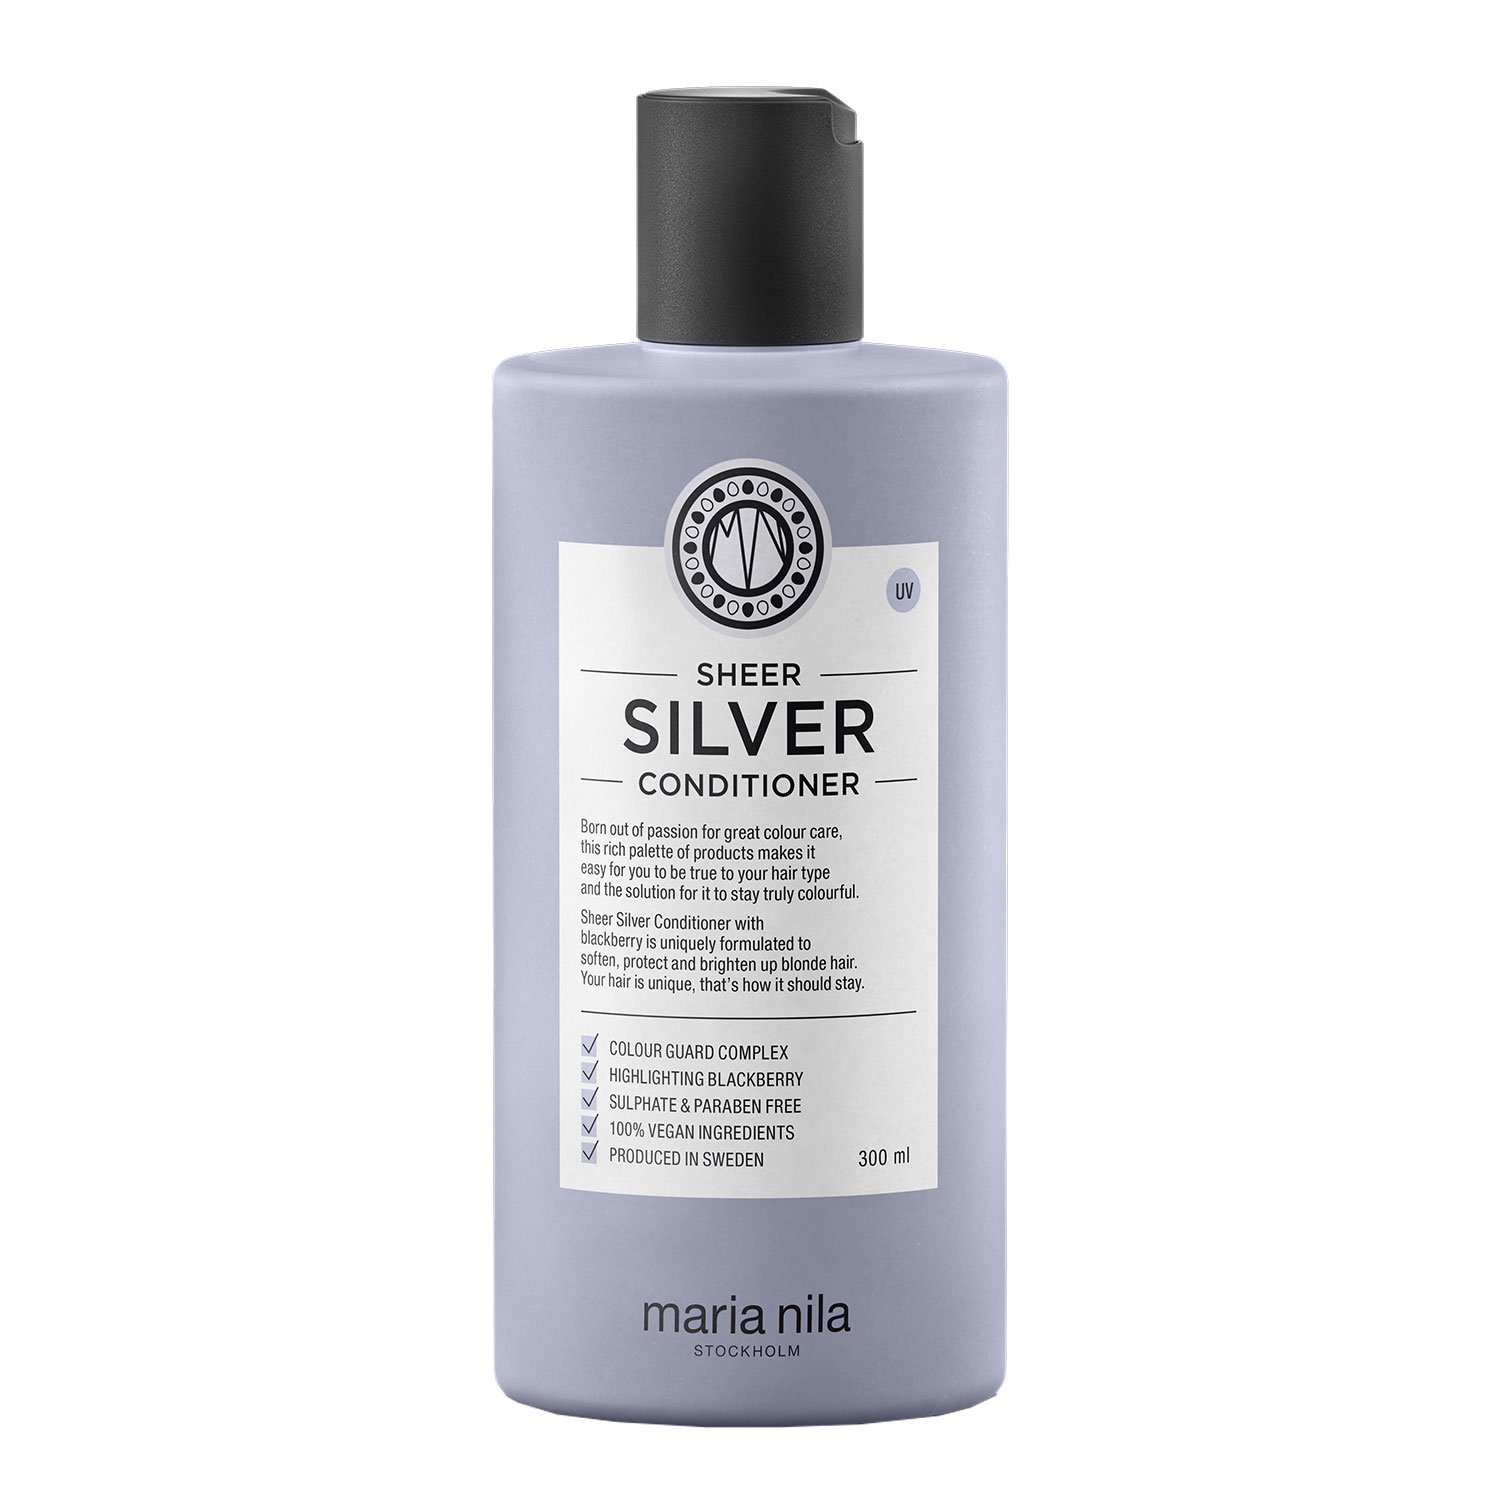 Produktbild von Care & Style - Sheer Silver Conditioner